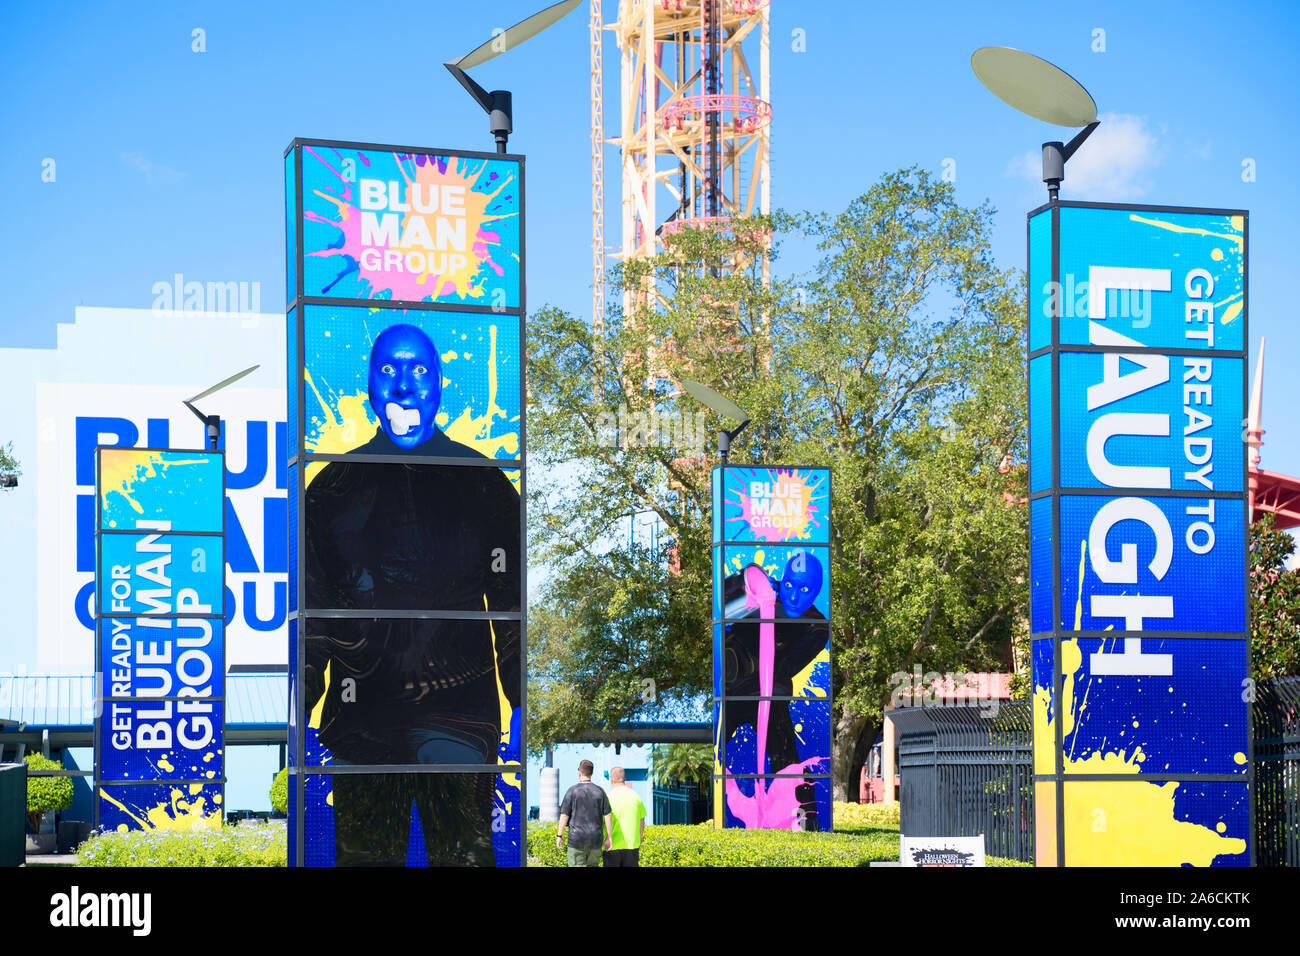 El Teatro de la comedia de Blue Man Group, mostrar signos, CItyWalk Universal Studios Resort, Orlando, Florida, EE.UU. Foto de stock